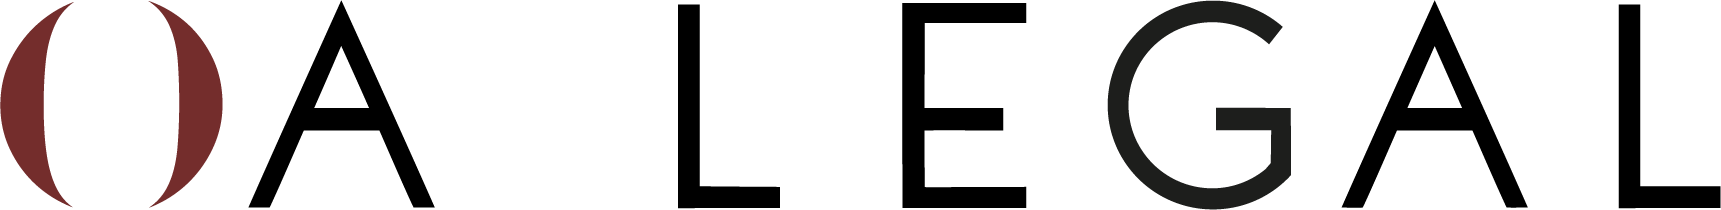 OA Legal Logo